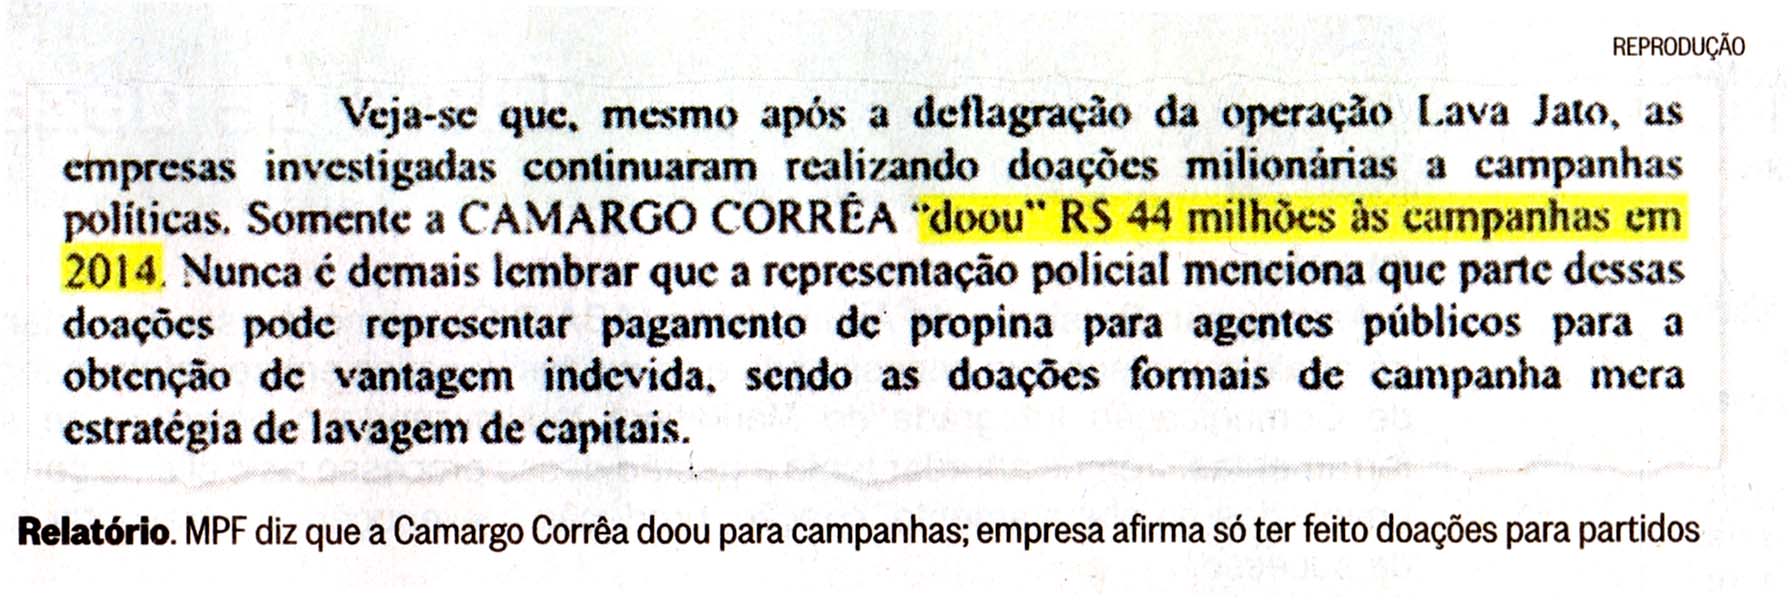 MPF diz que Camargo Corra doou para campanhas - O Globo 191114